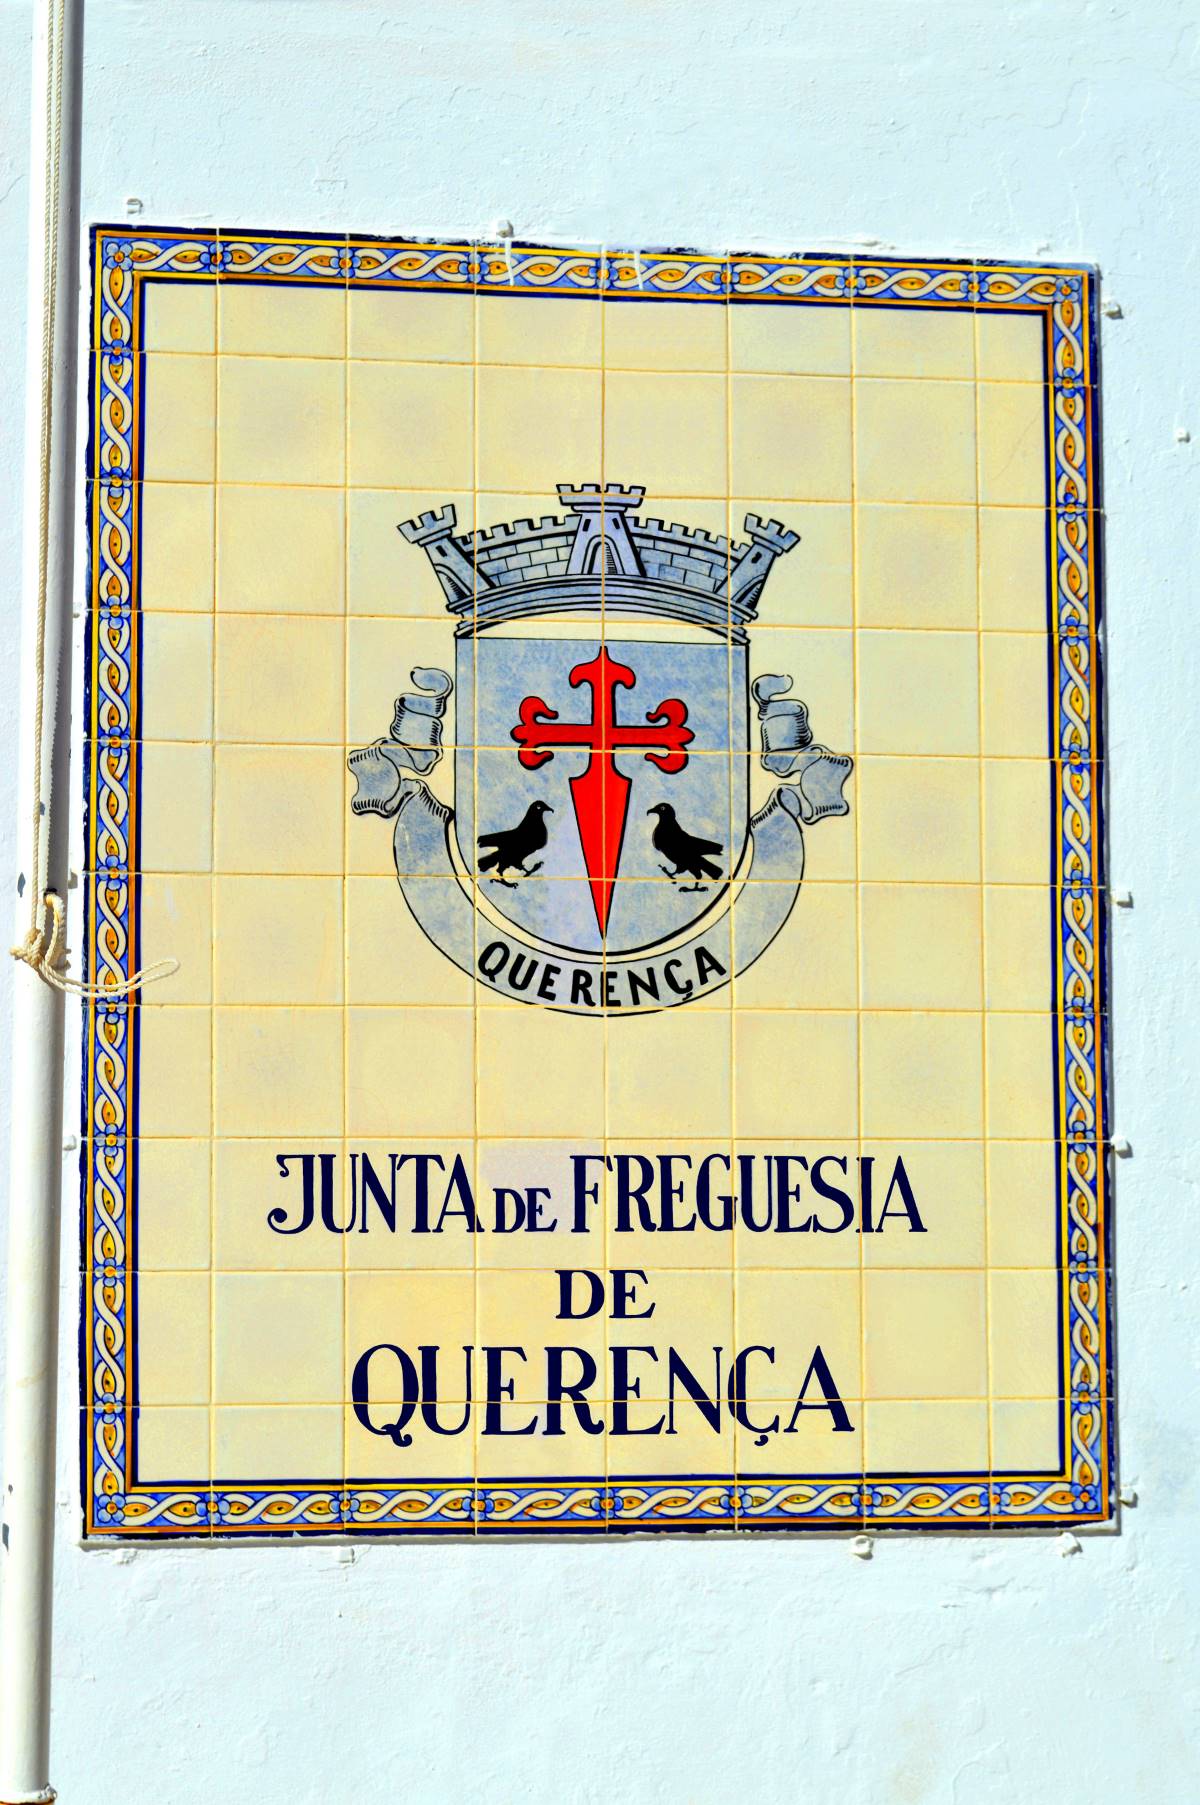 Placa de azulejos tradicional portuguesa na parede indicando "Junta de Freguesia de Querença", simbolizando a administração local e serviços ao cidadão, incluindo a confirmação de morada e orientações para mudança de residência.